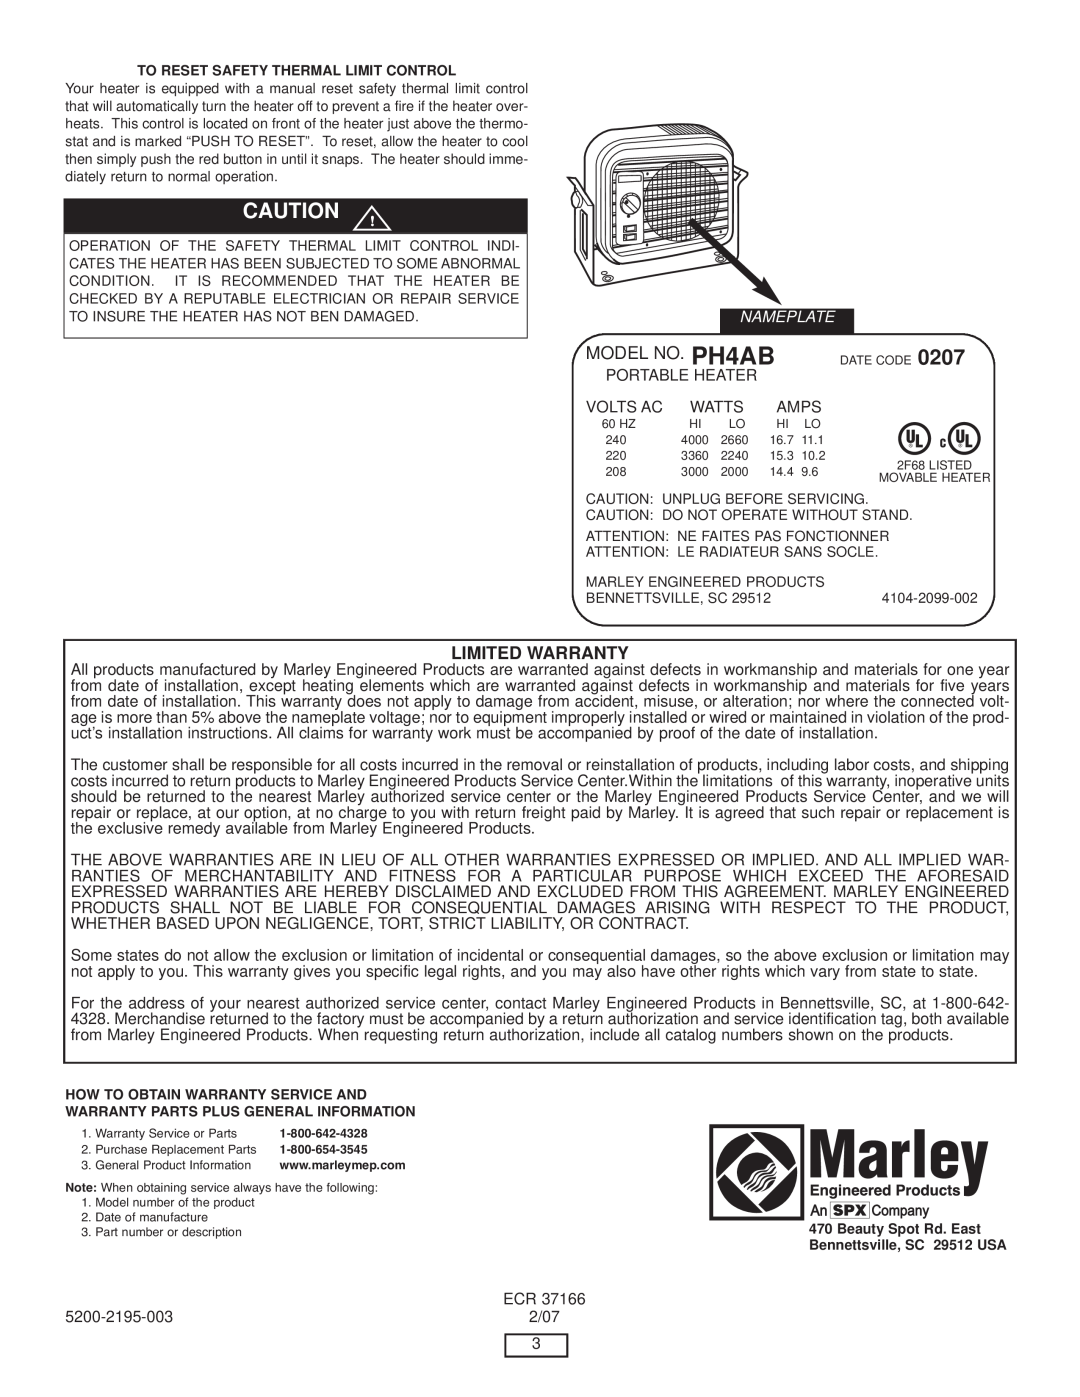 Marley Engineered Products PH4AB manual C Au Tio N, Li Mi, Wa Rr A Nty 